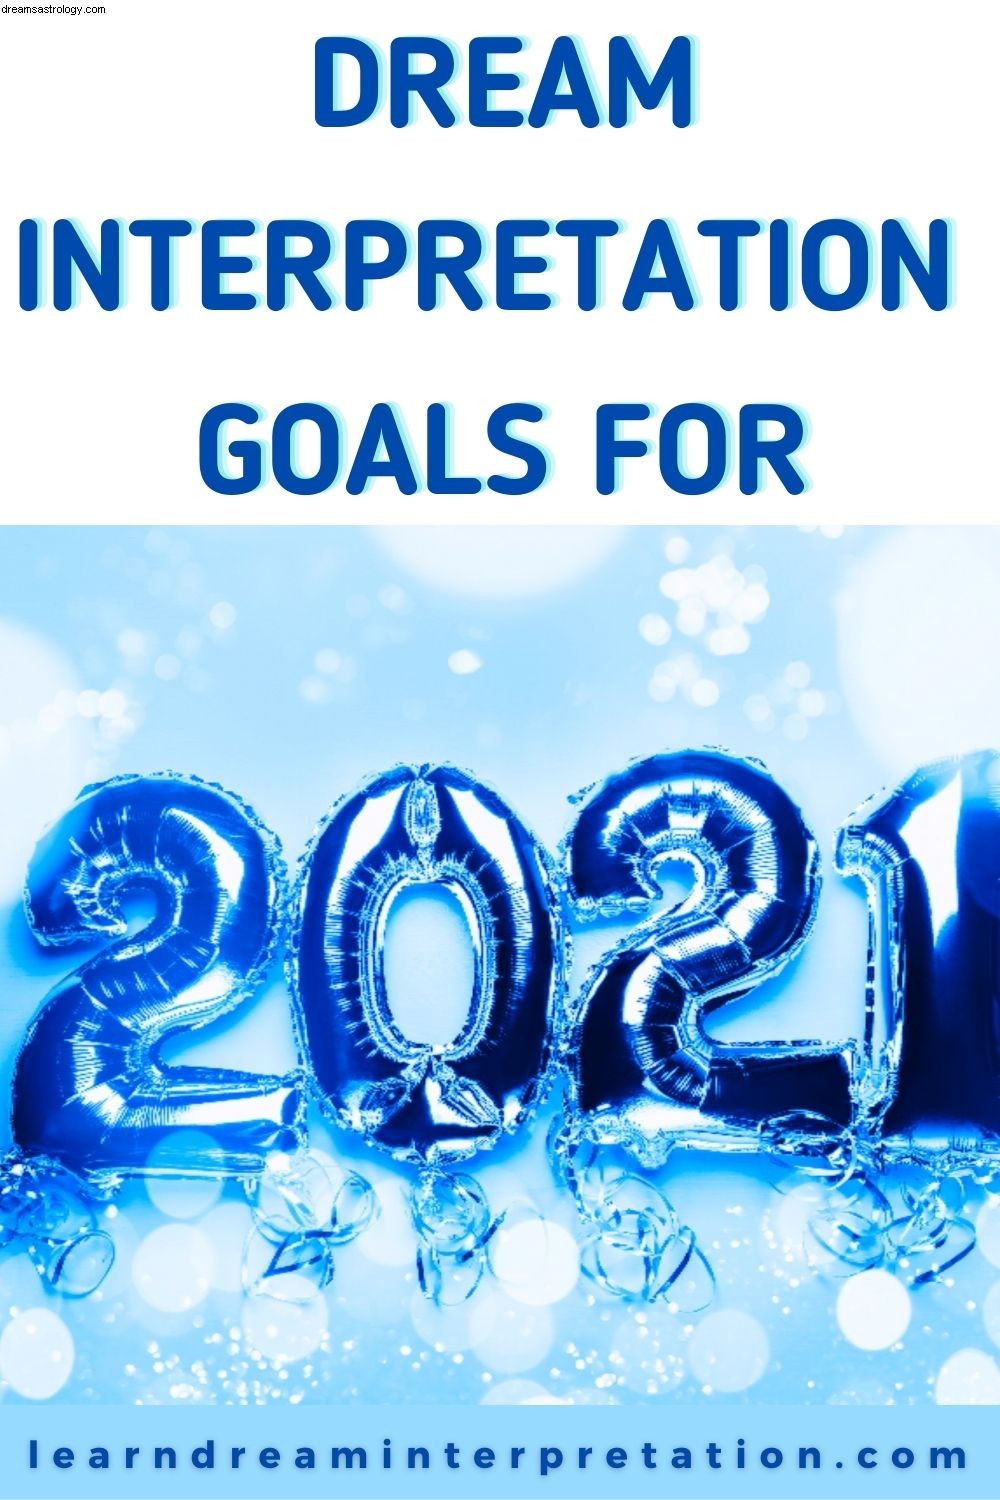 Metas de interpretação dos sonhos para 2021 